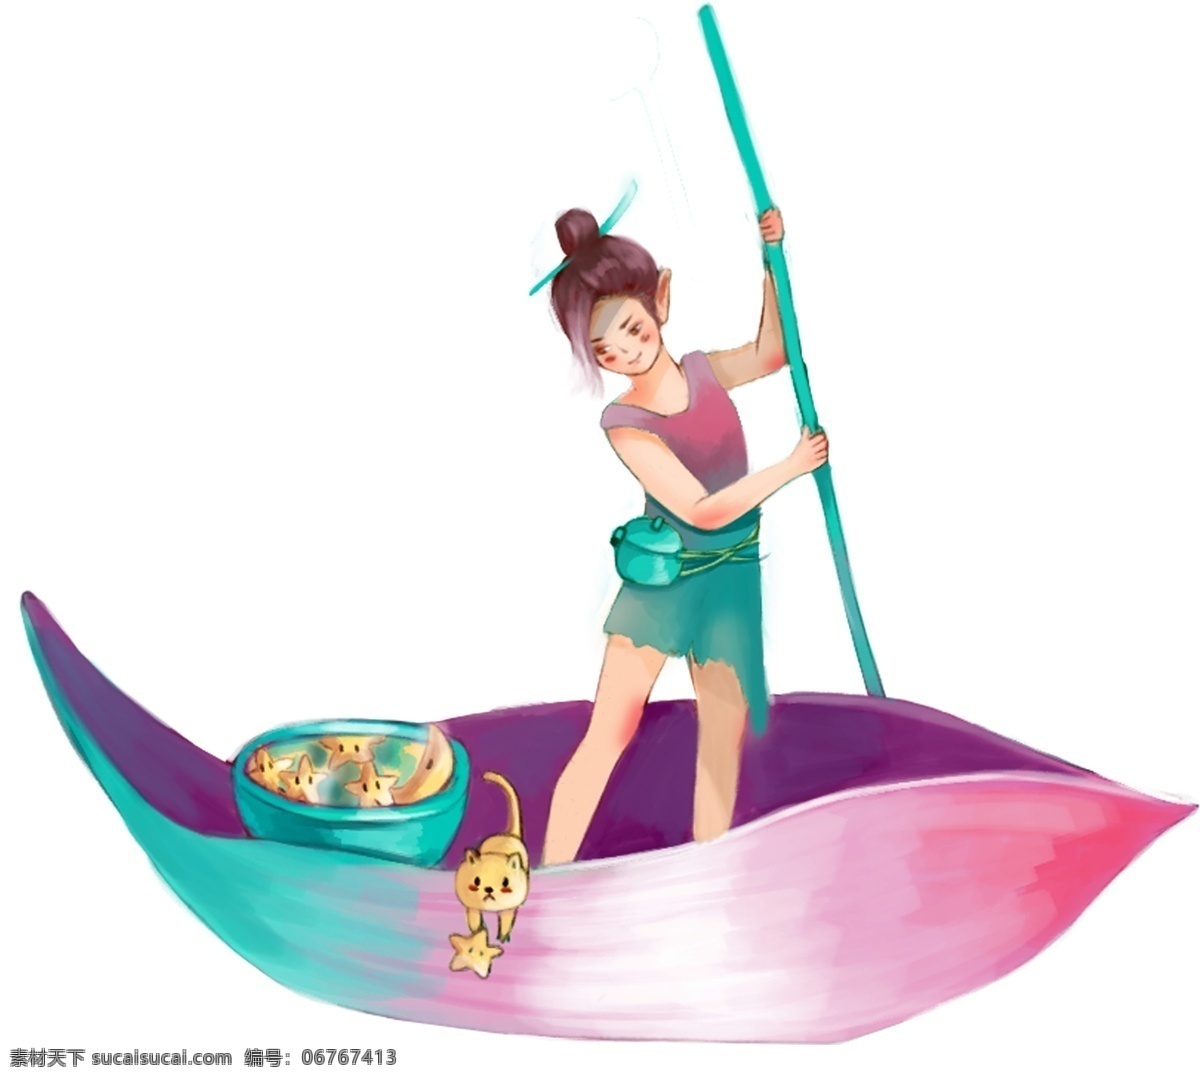 划船的小女孩 划船 卡通 女孩 人物 船